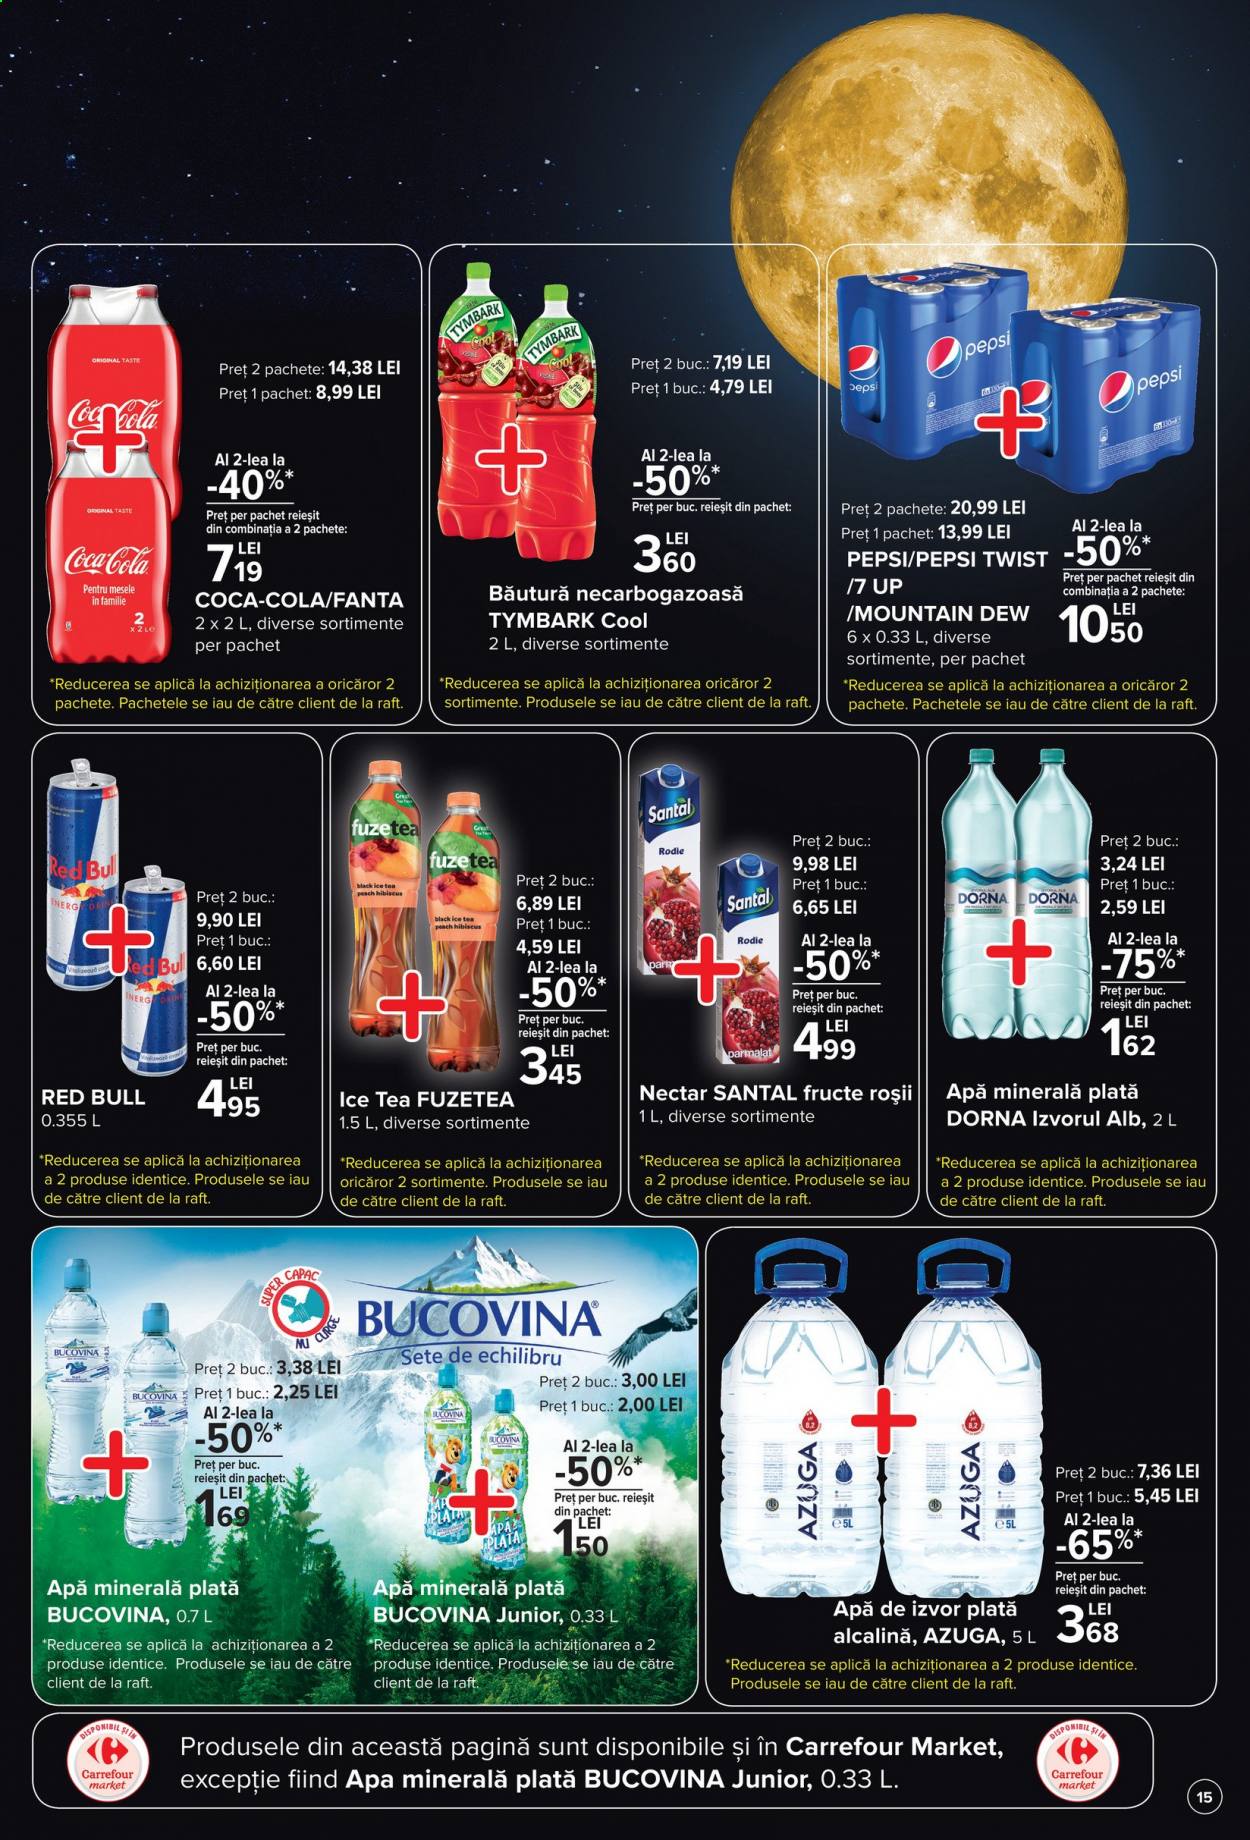 thumbnail - Cataloage Carrefour - 18.03.2021 - 24.03.2021 - Produse în vânzare - Coca-Cola, Fanta, nectar, Mountain Dew, Red Bull, Pepsi, apă de izvor plată, apă minerală. Pagina 15.